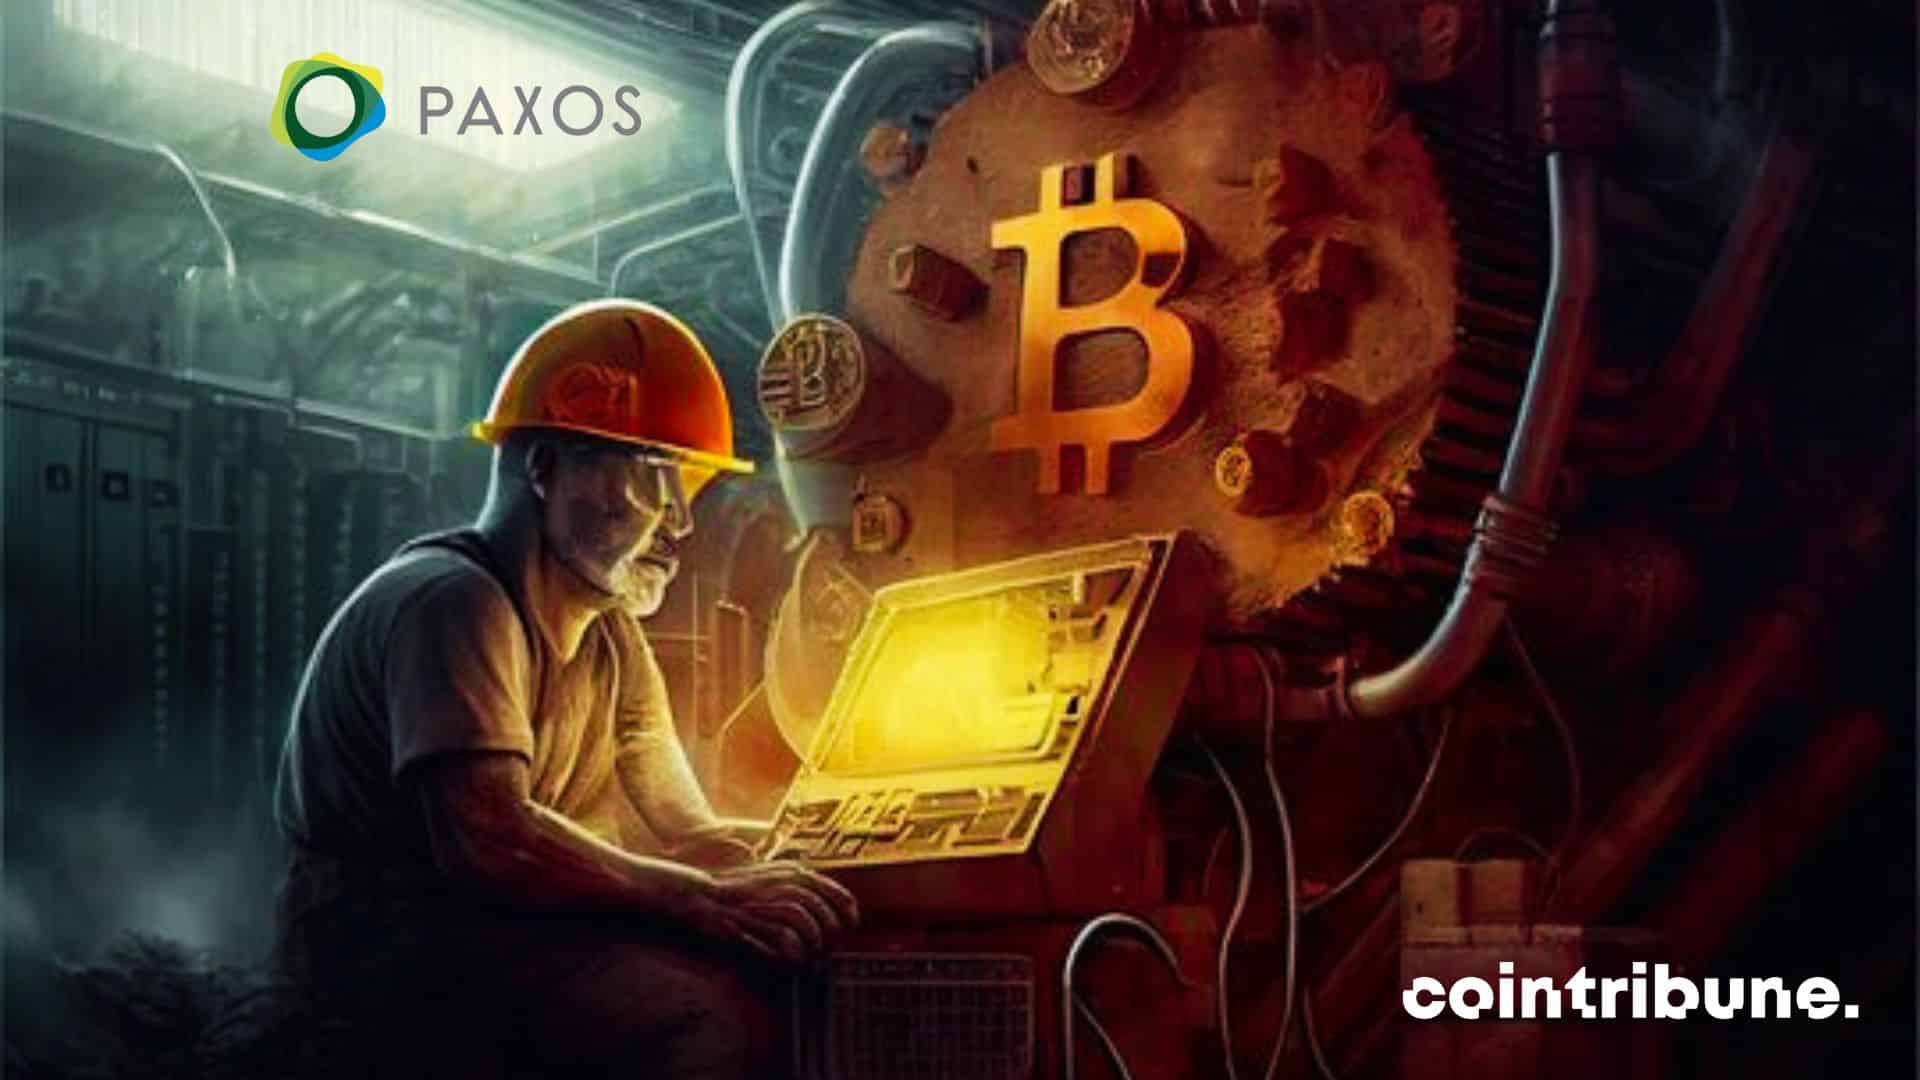 paxos bitcoin mining crypto